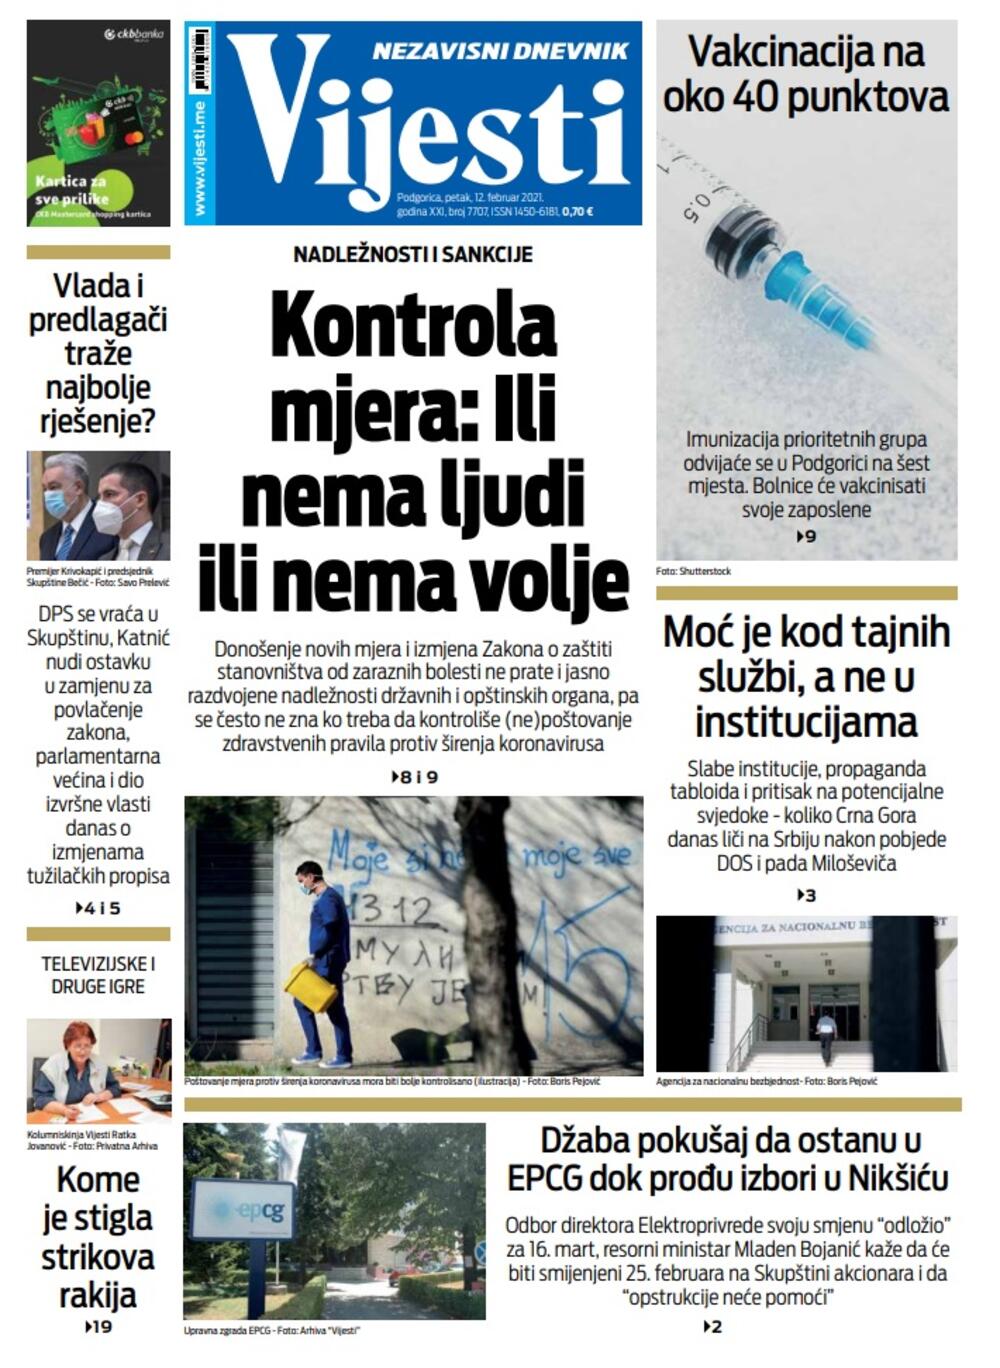 Naslovna strana "Vijesti" za petak 12. februar 2021. godine, Foto: Vijesti